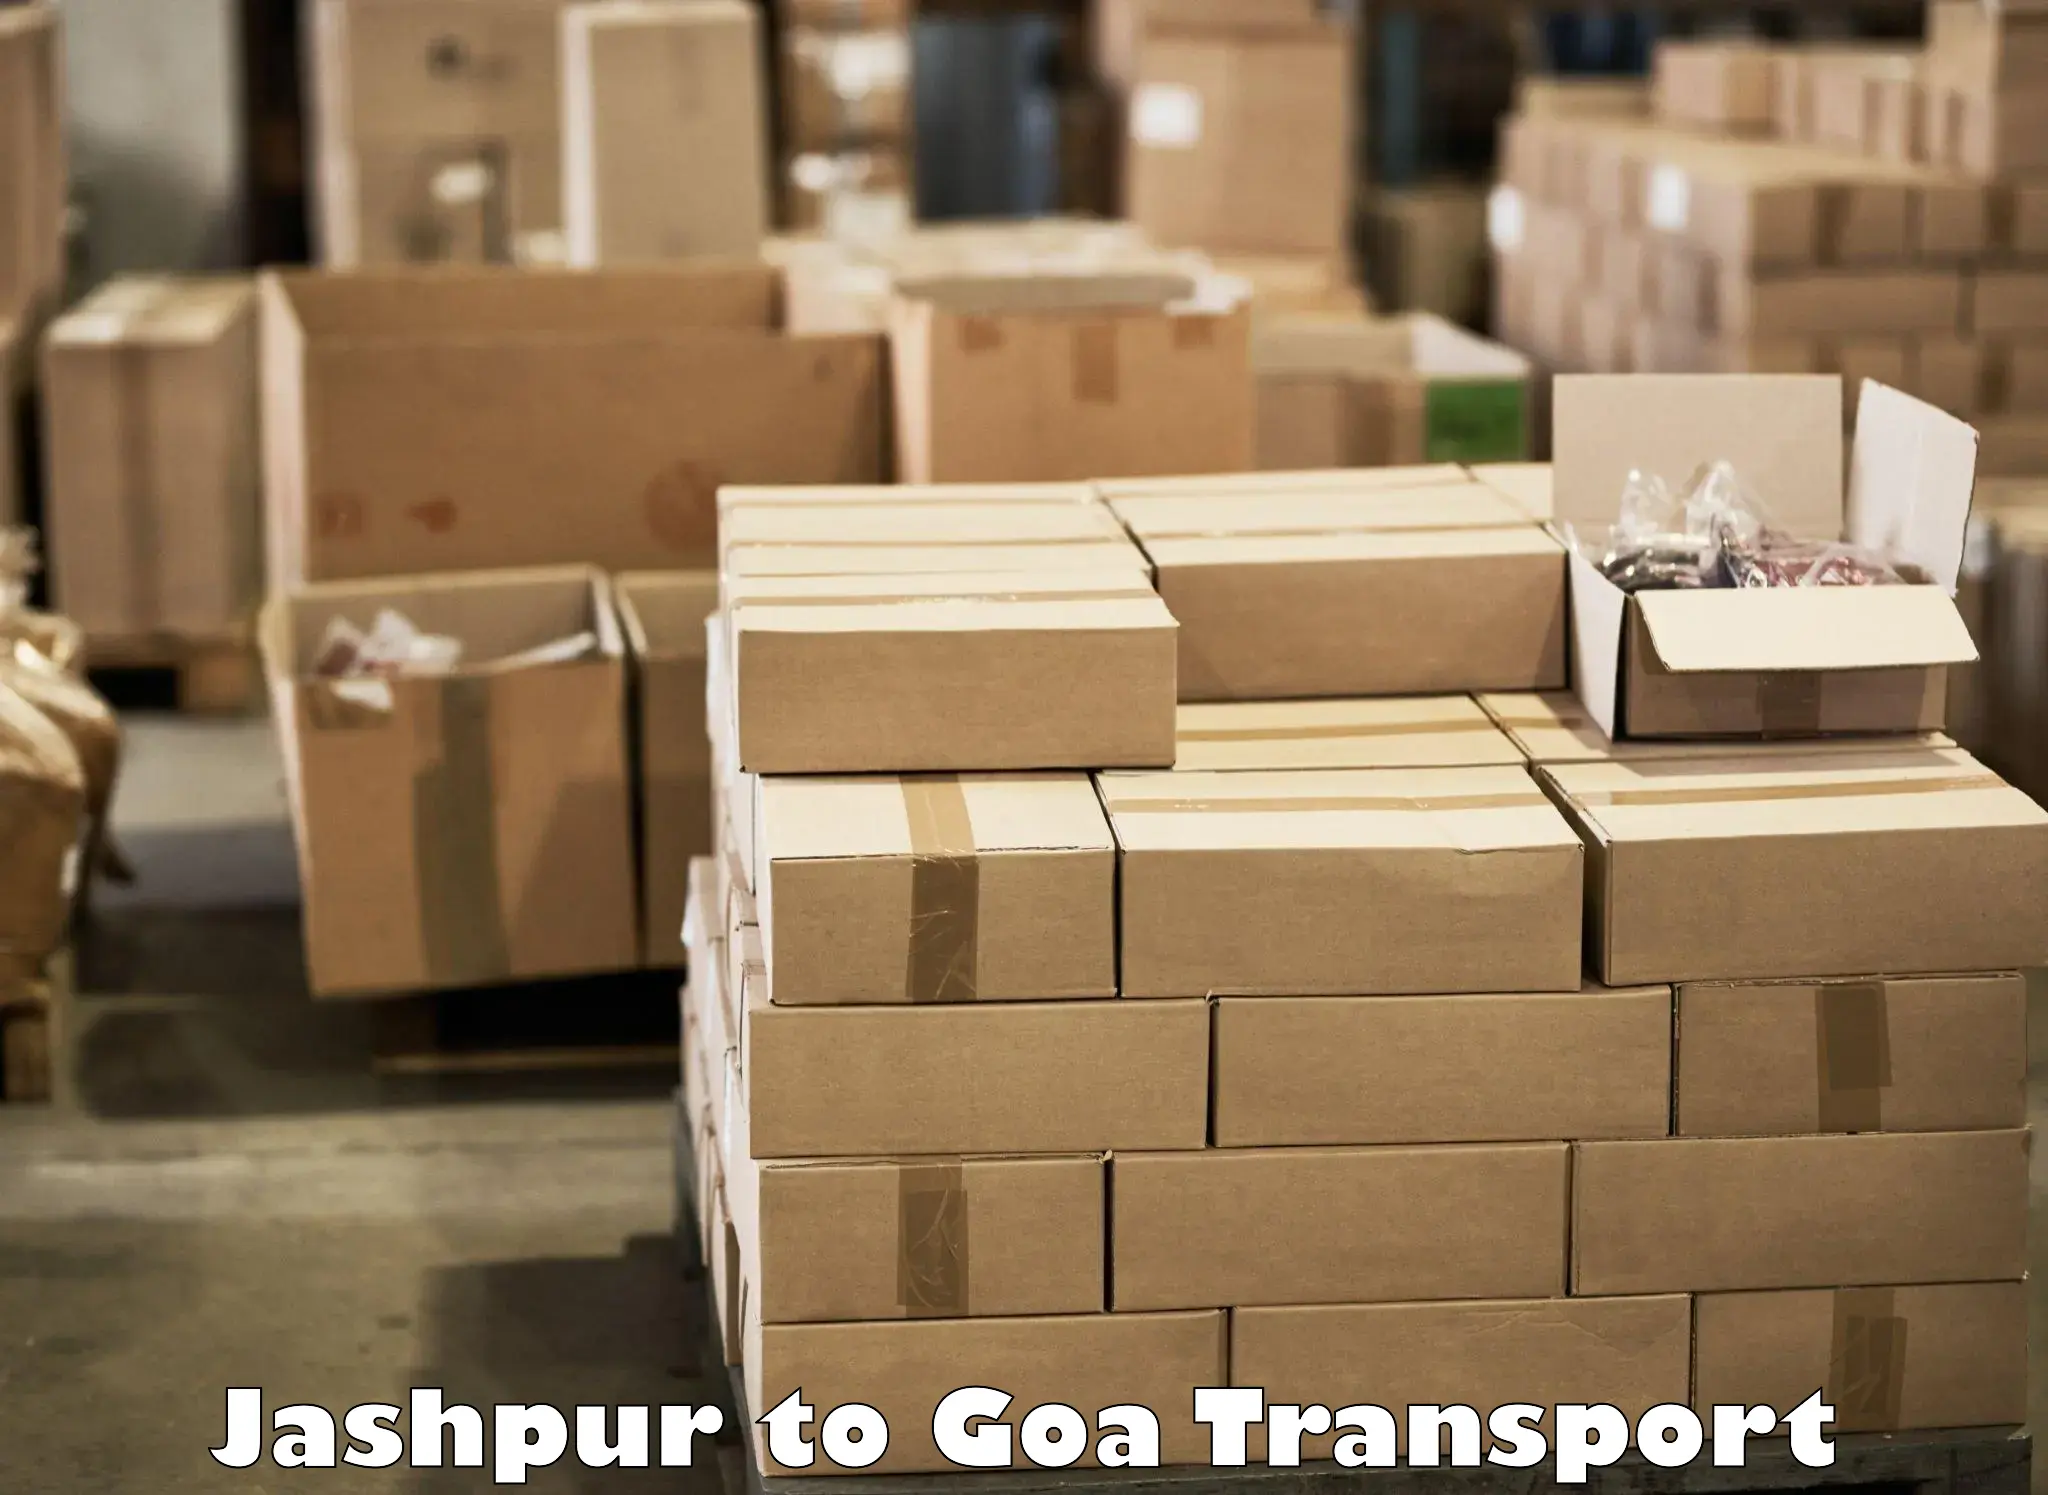 Interstate transport services Jashpur to IIT Goa